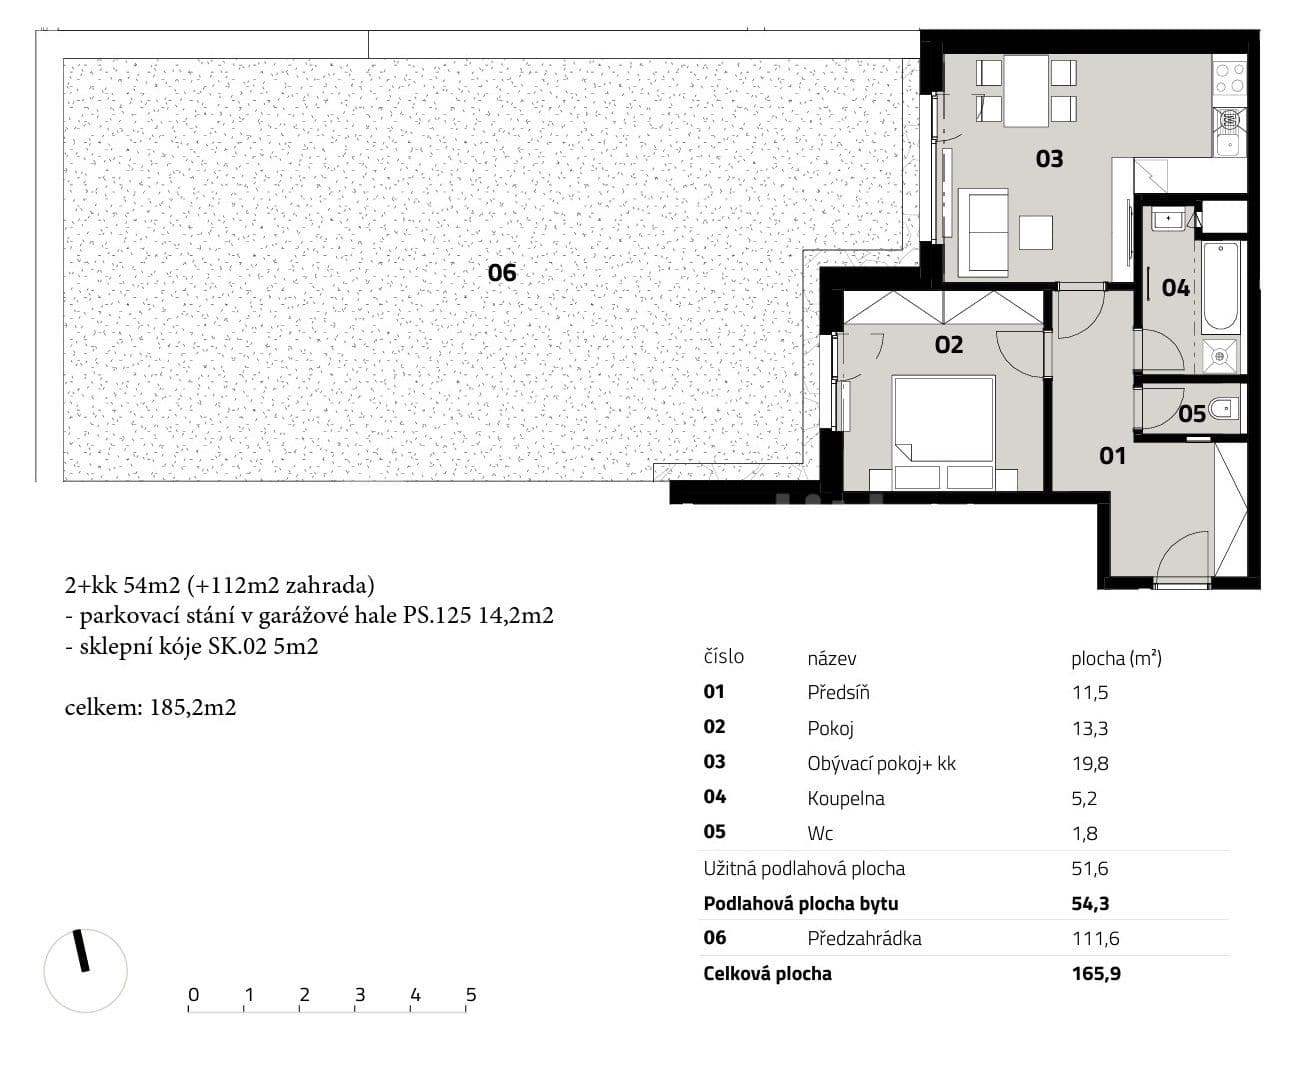 1 bedroom with open-plan kitchen flat for sale, 54 m², Mezi Vodami, Prague, Prague